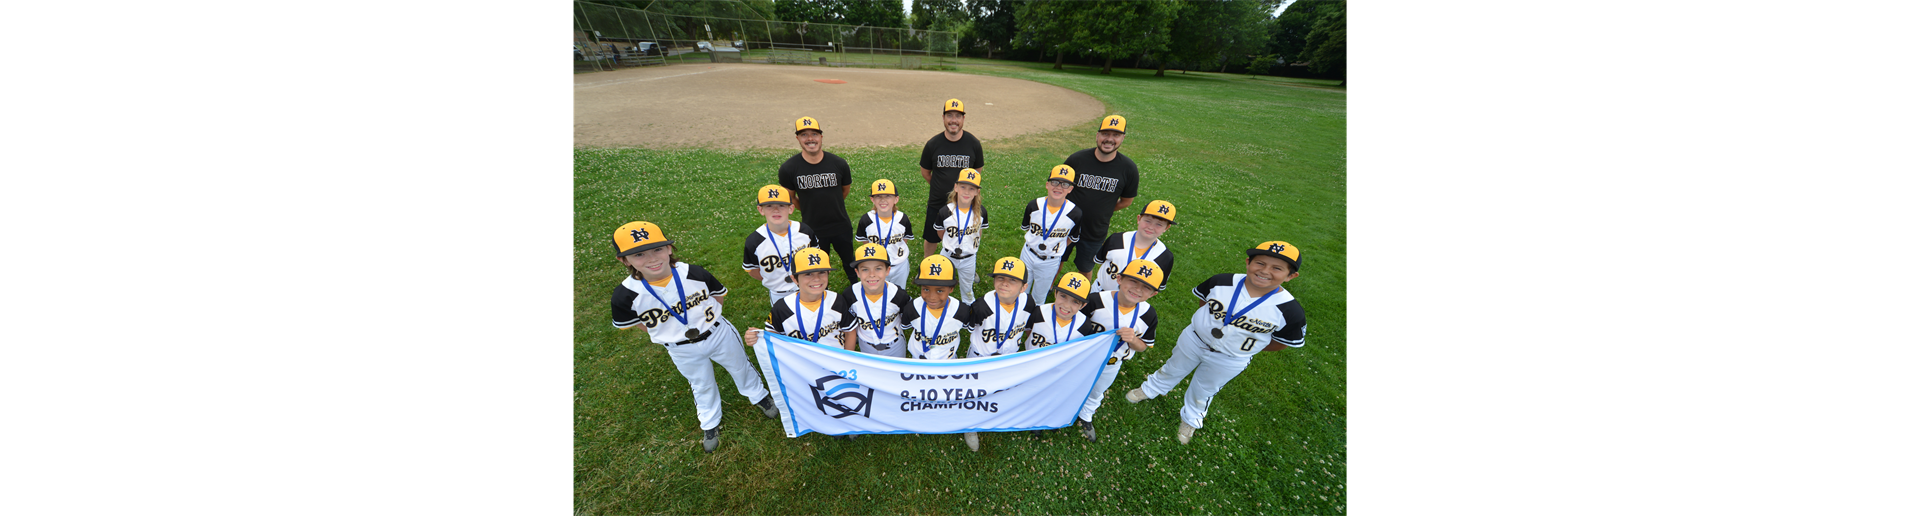 NPLL 10U Baseball All-Stars District 1 Champions!